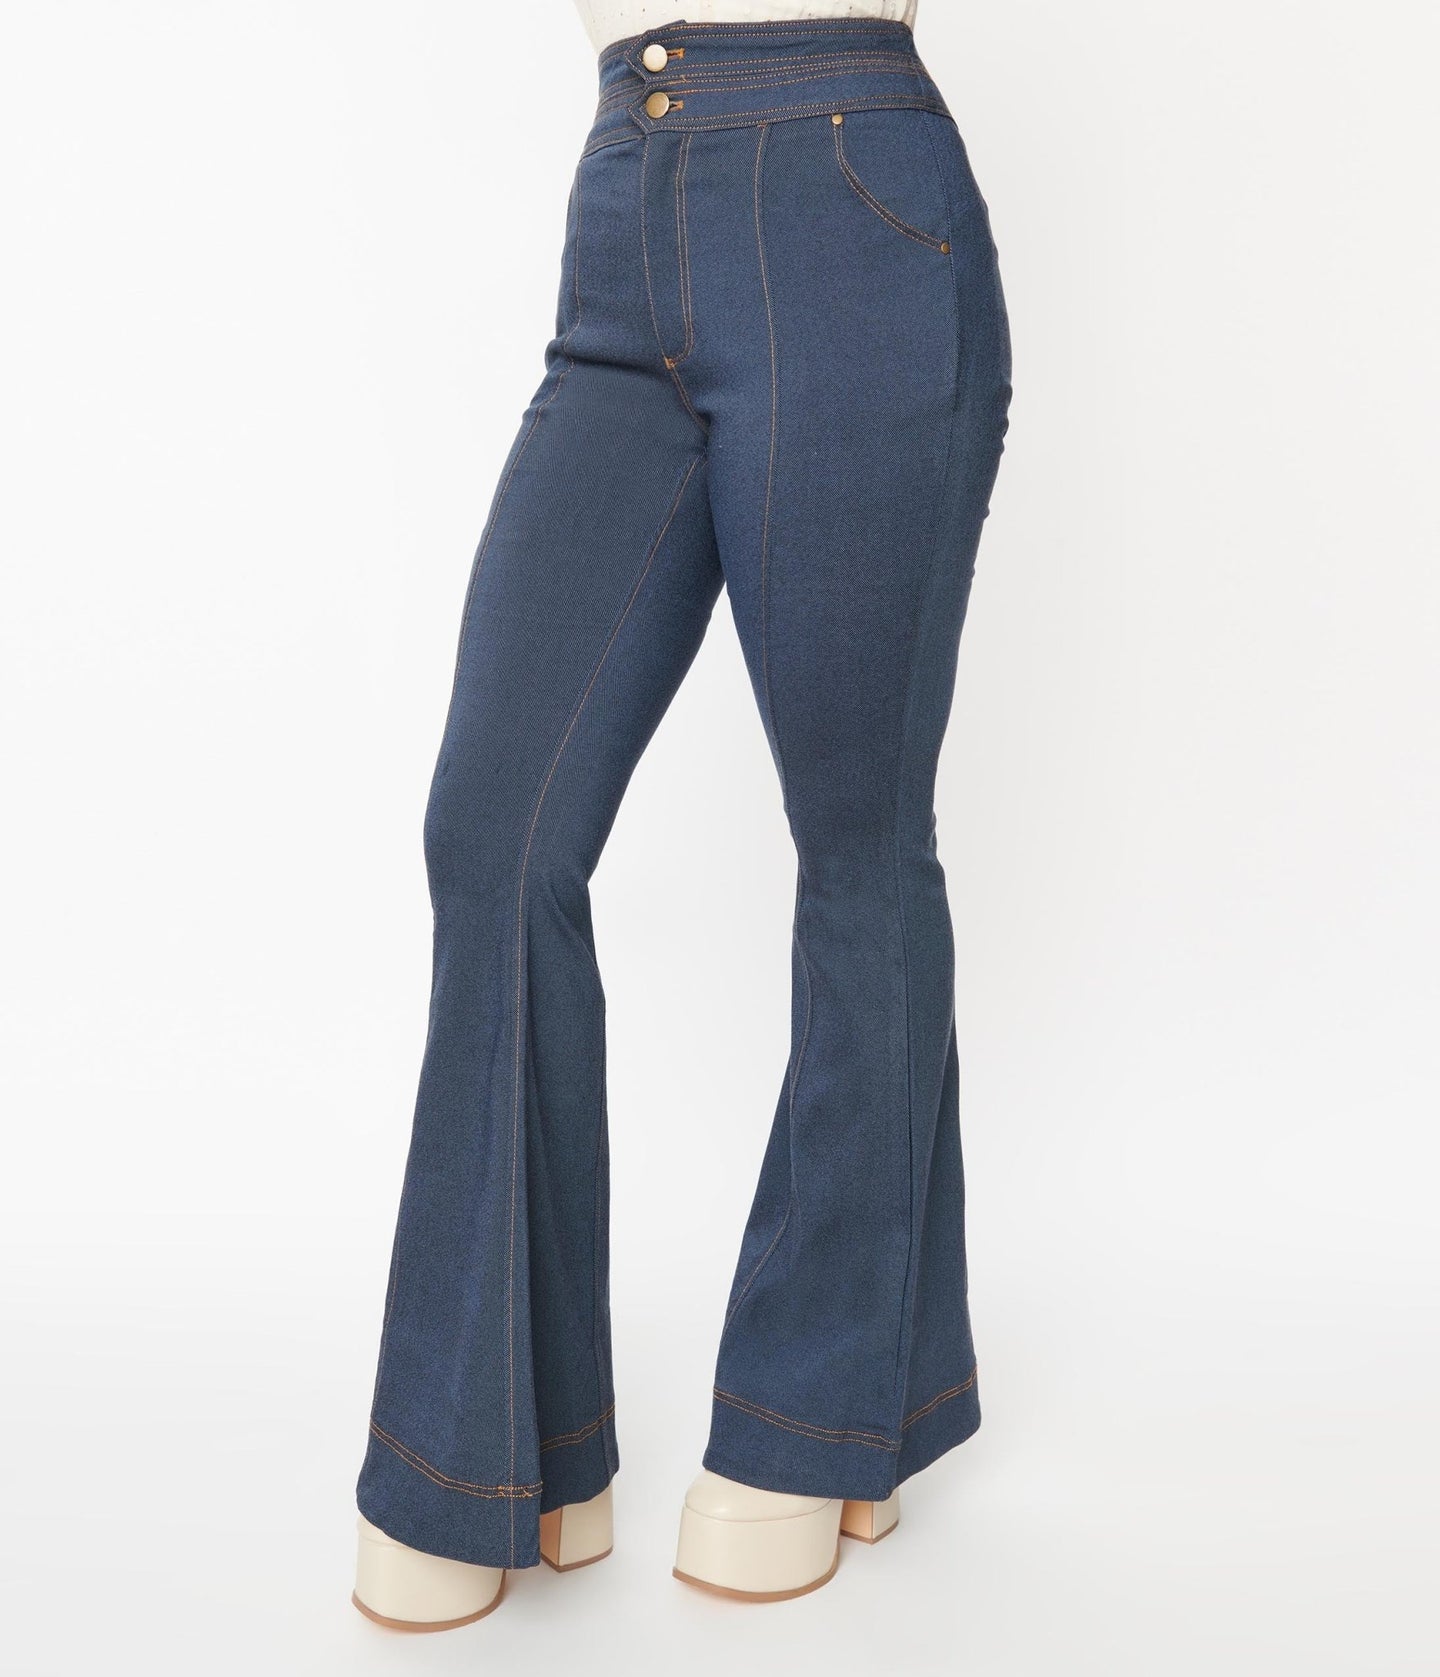 Plus Size Jeans – Unique Vintage